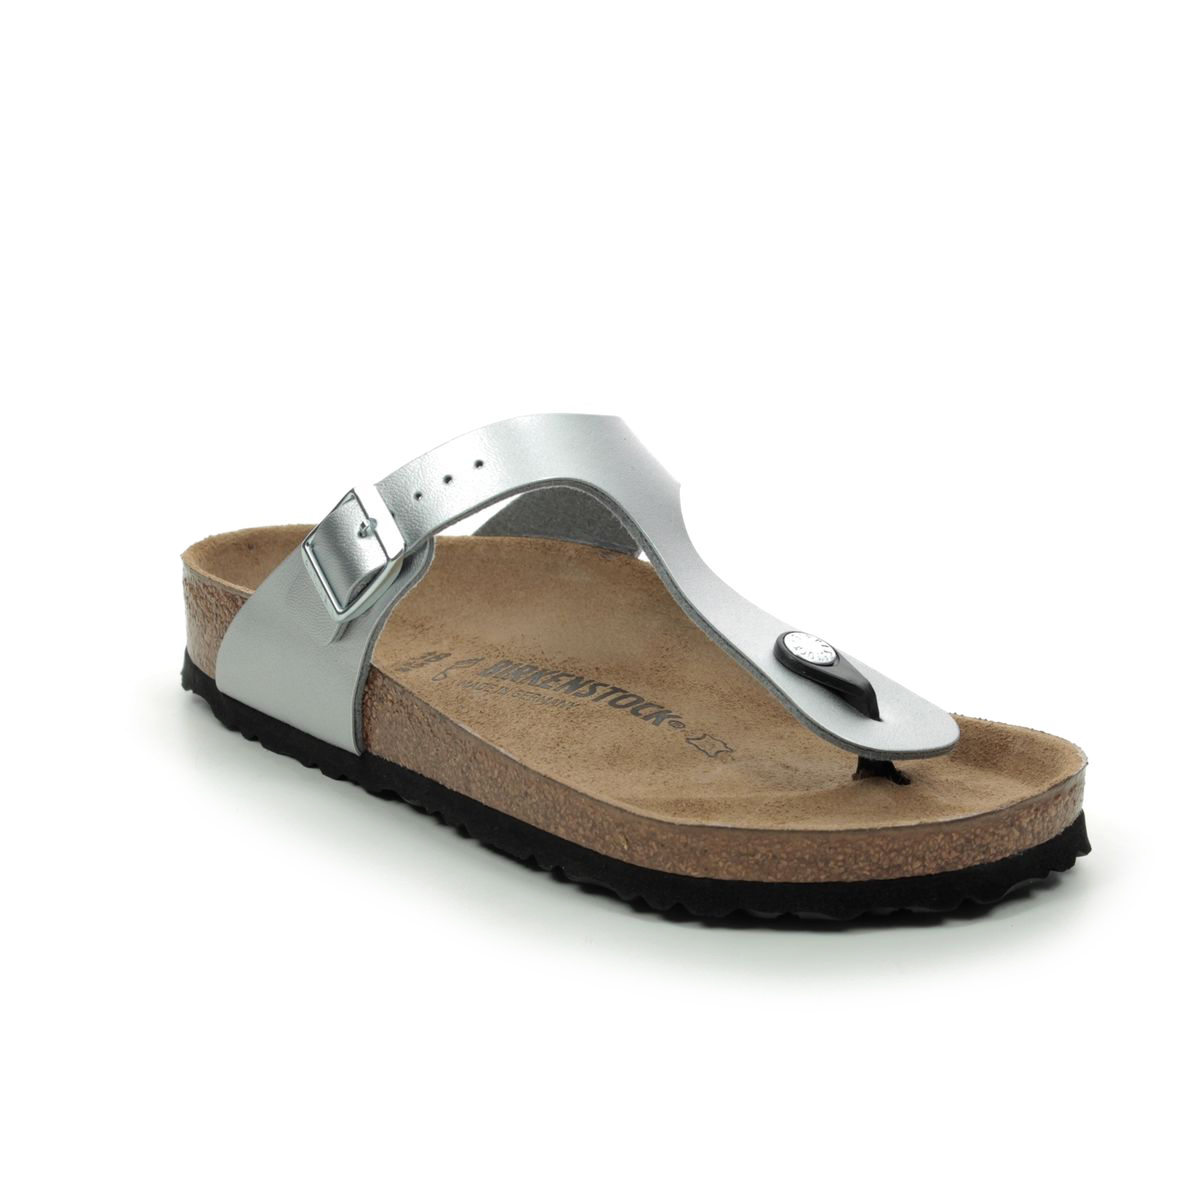 birkenstock toe post sandals